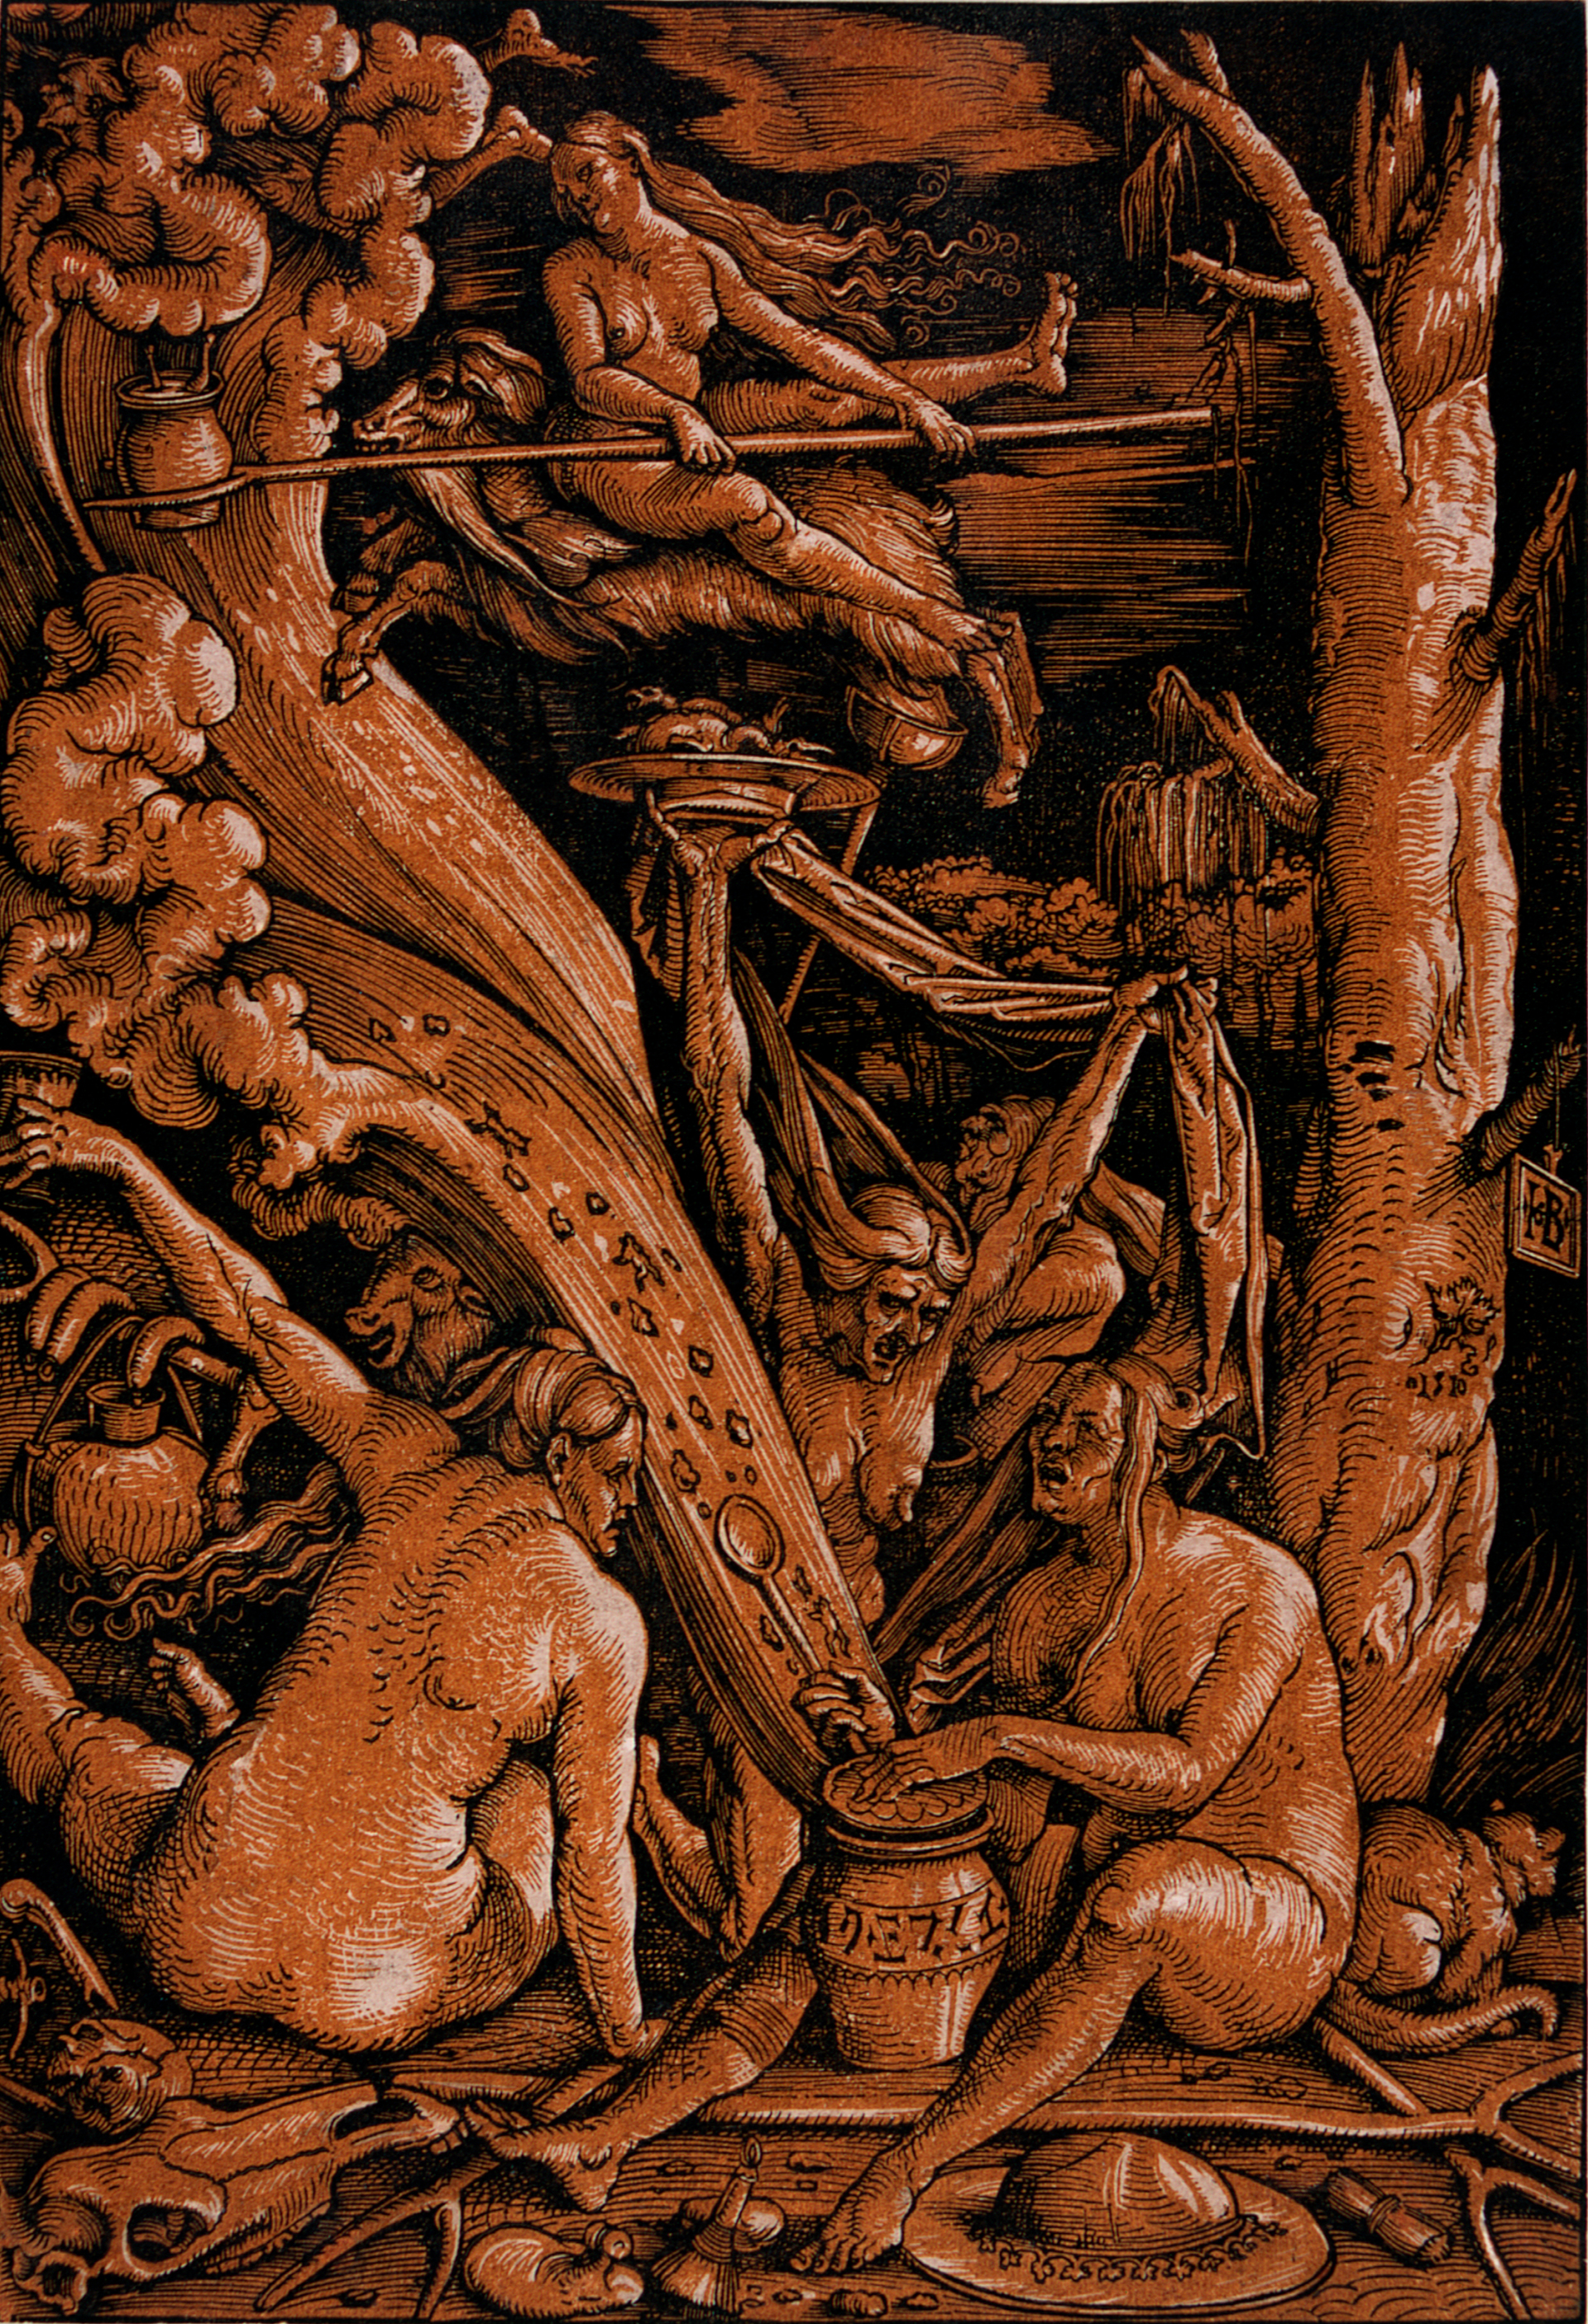 Abbildung des Werks "Hexen" von Hans Baldung Grien, entstanden 1510, aus der Stiftung Schloss Friedenstein Gotha.